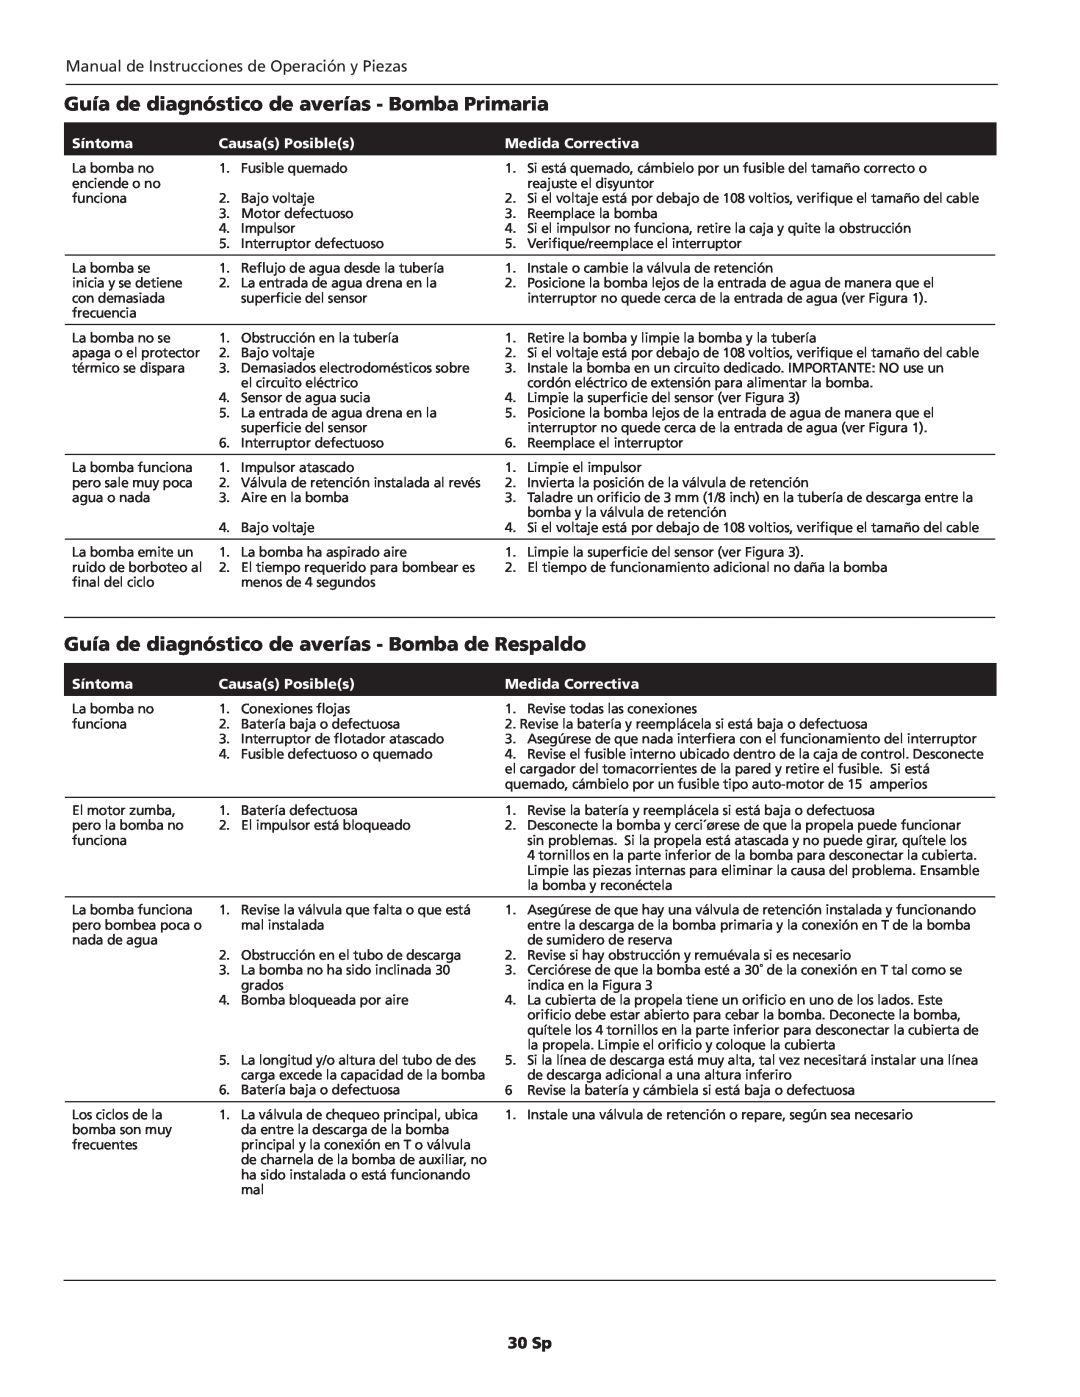 Wayne WSS30, WSS10 Guía de diagnóstico de averías - Bomba Primaria, 30 Sp, Síntoma, Causas Posibles, Medida Correctiva 